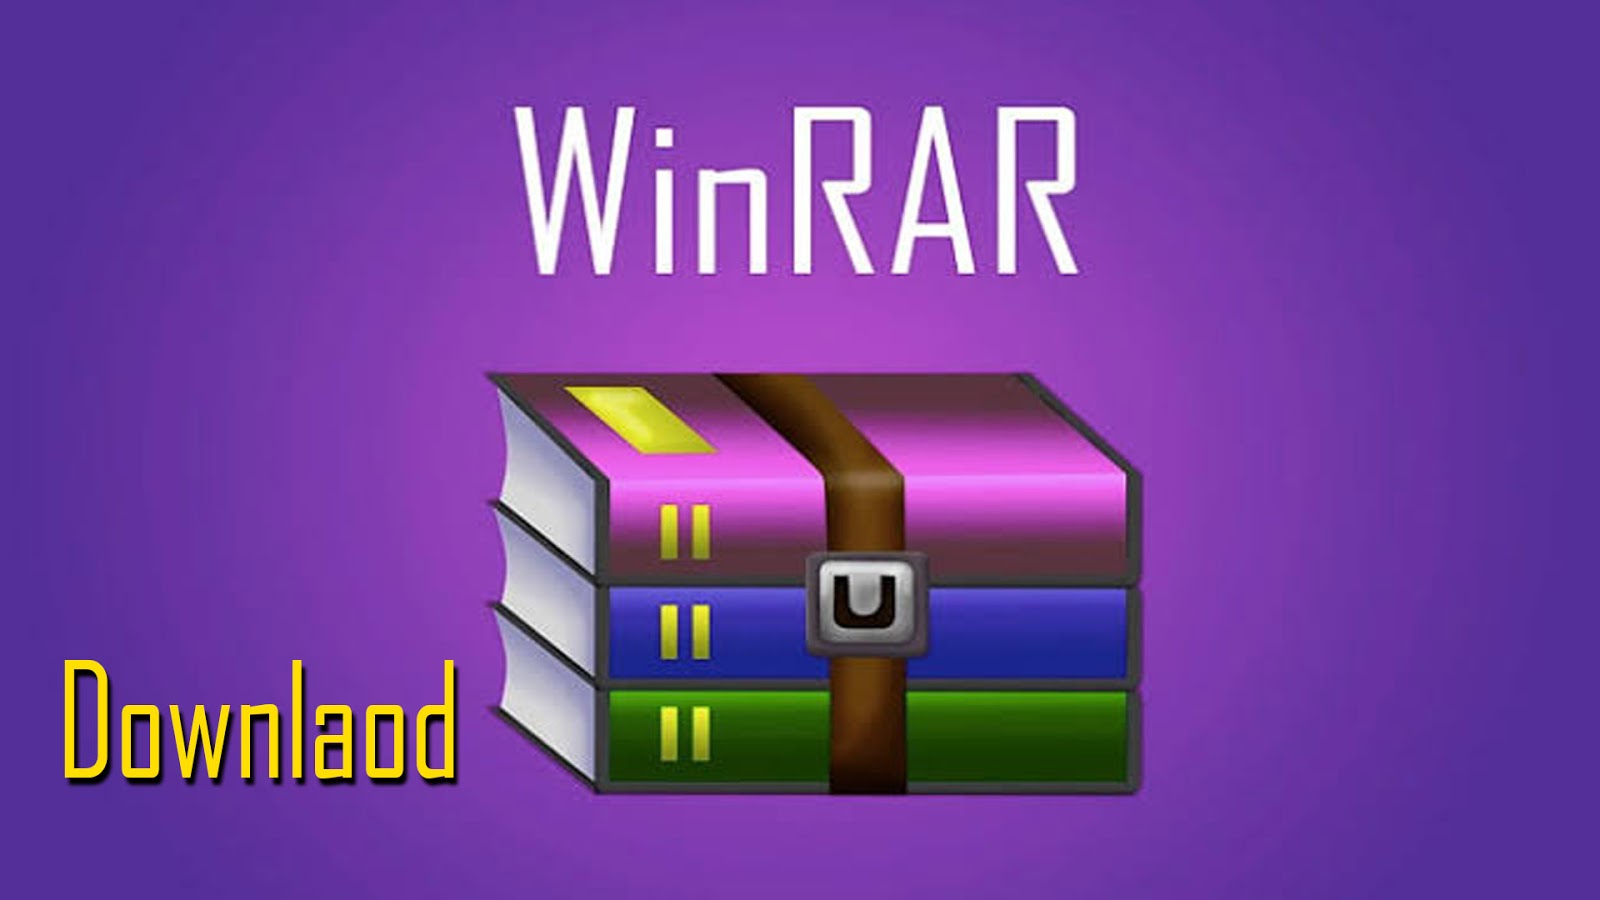 winrar free download 64 bit mac